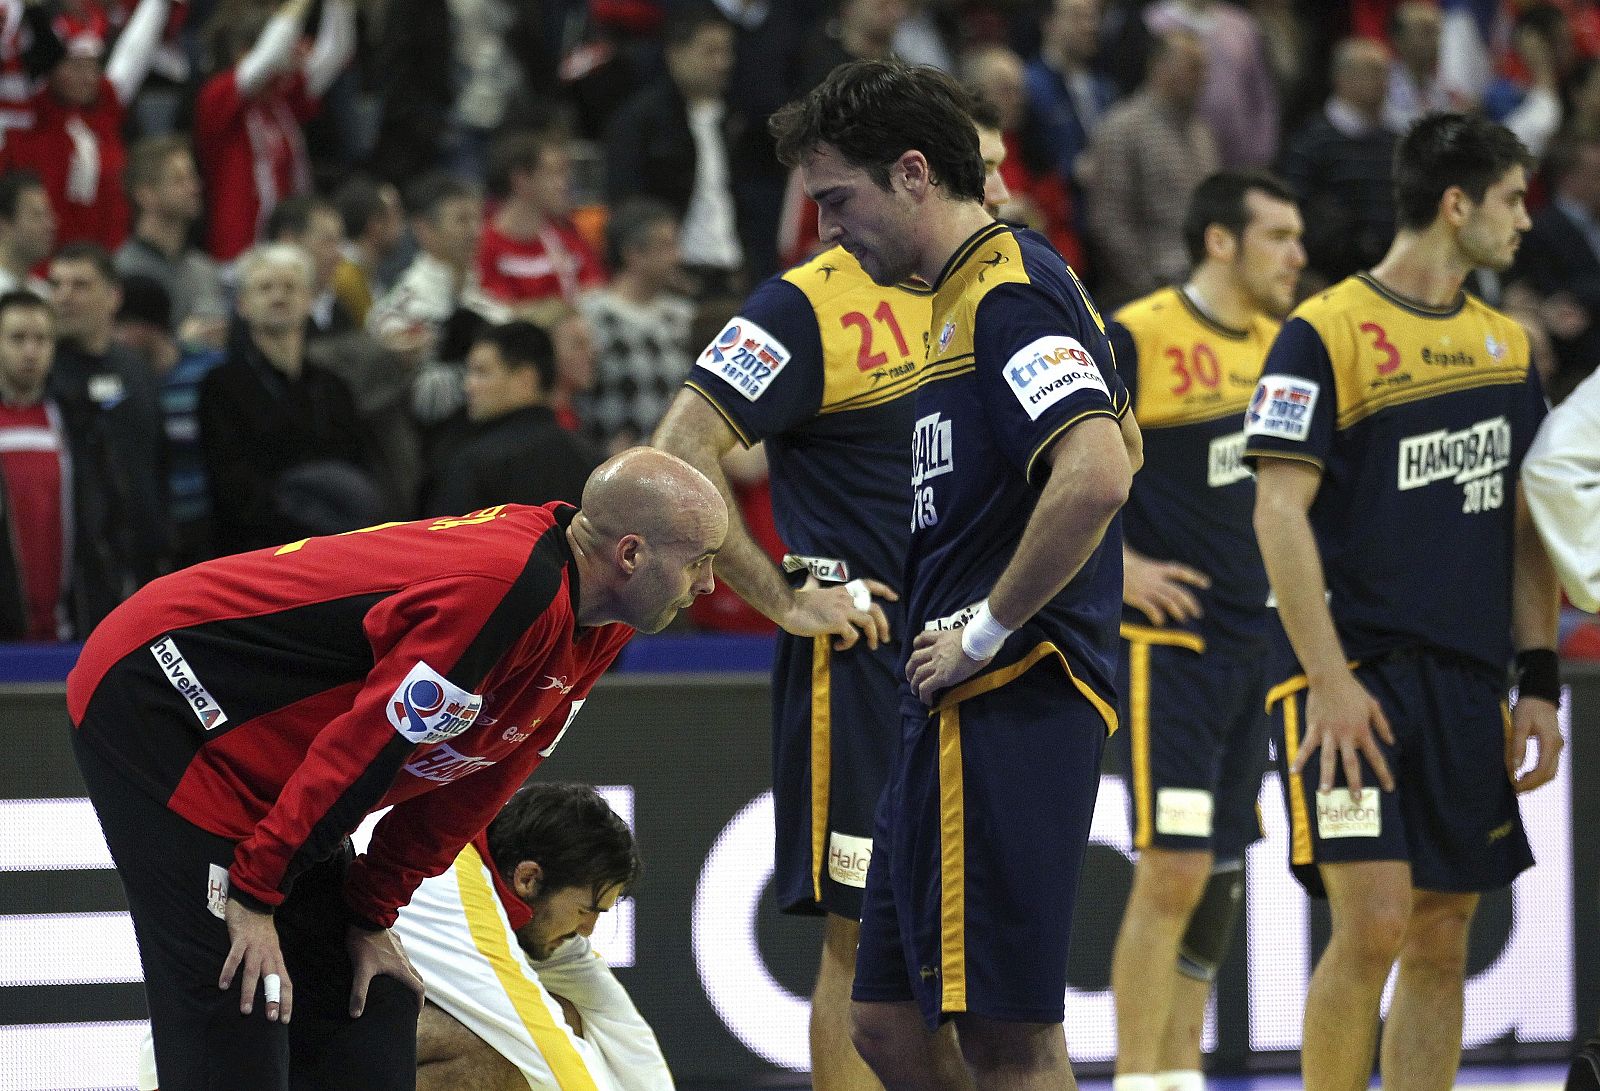 Los jugadores españoles se lamentan tras su derrota en el partido Dinamarca-España, de semifinales del Campeonato de Europa de balonmano